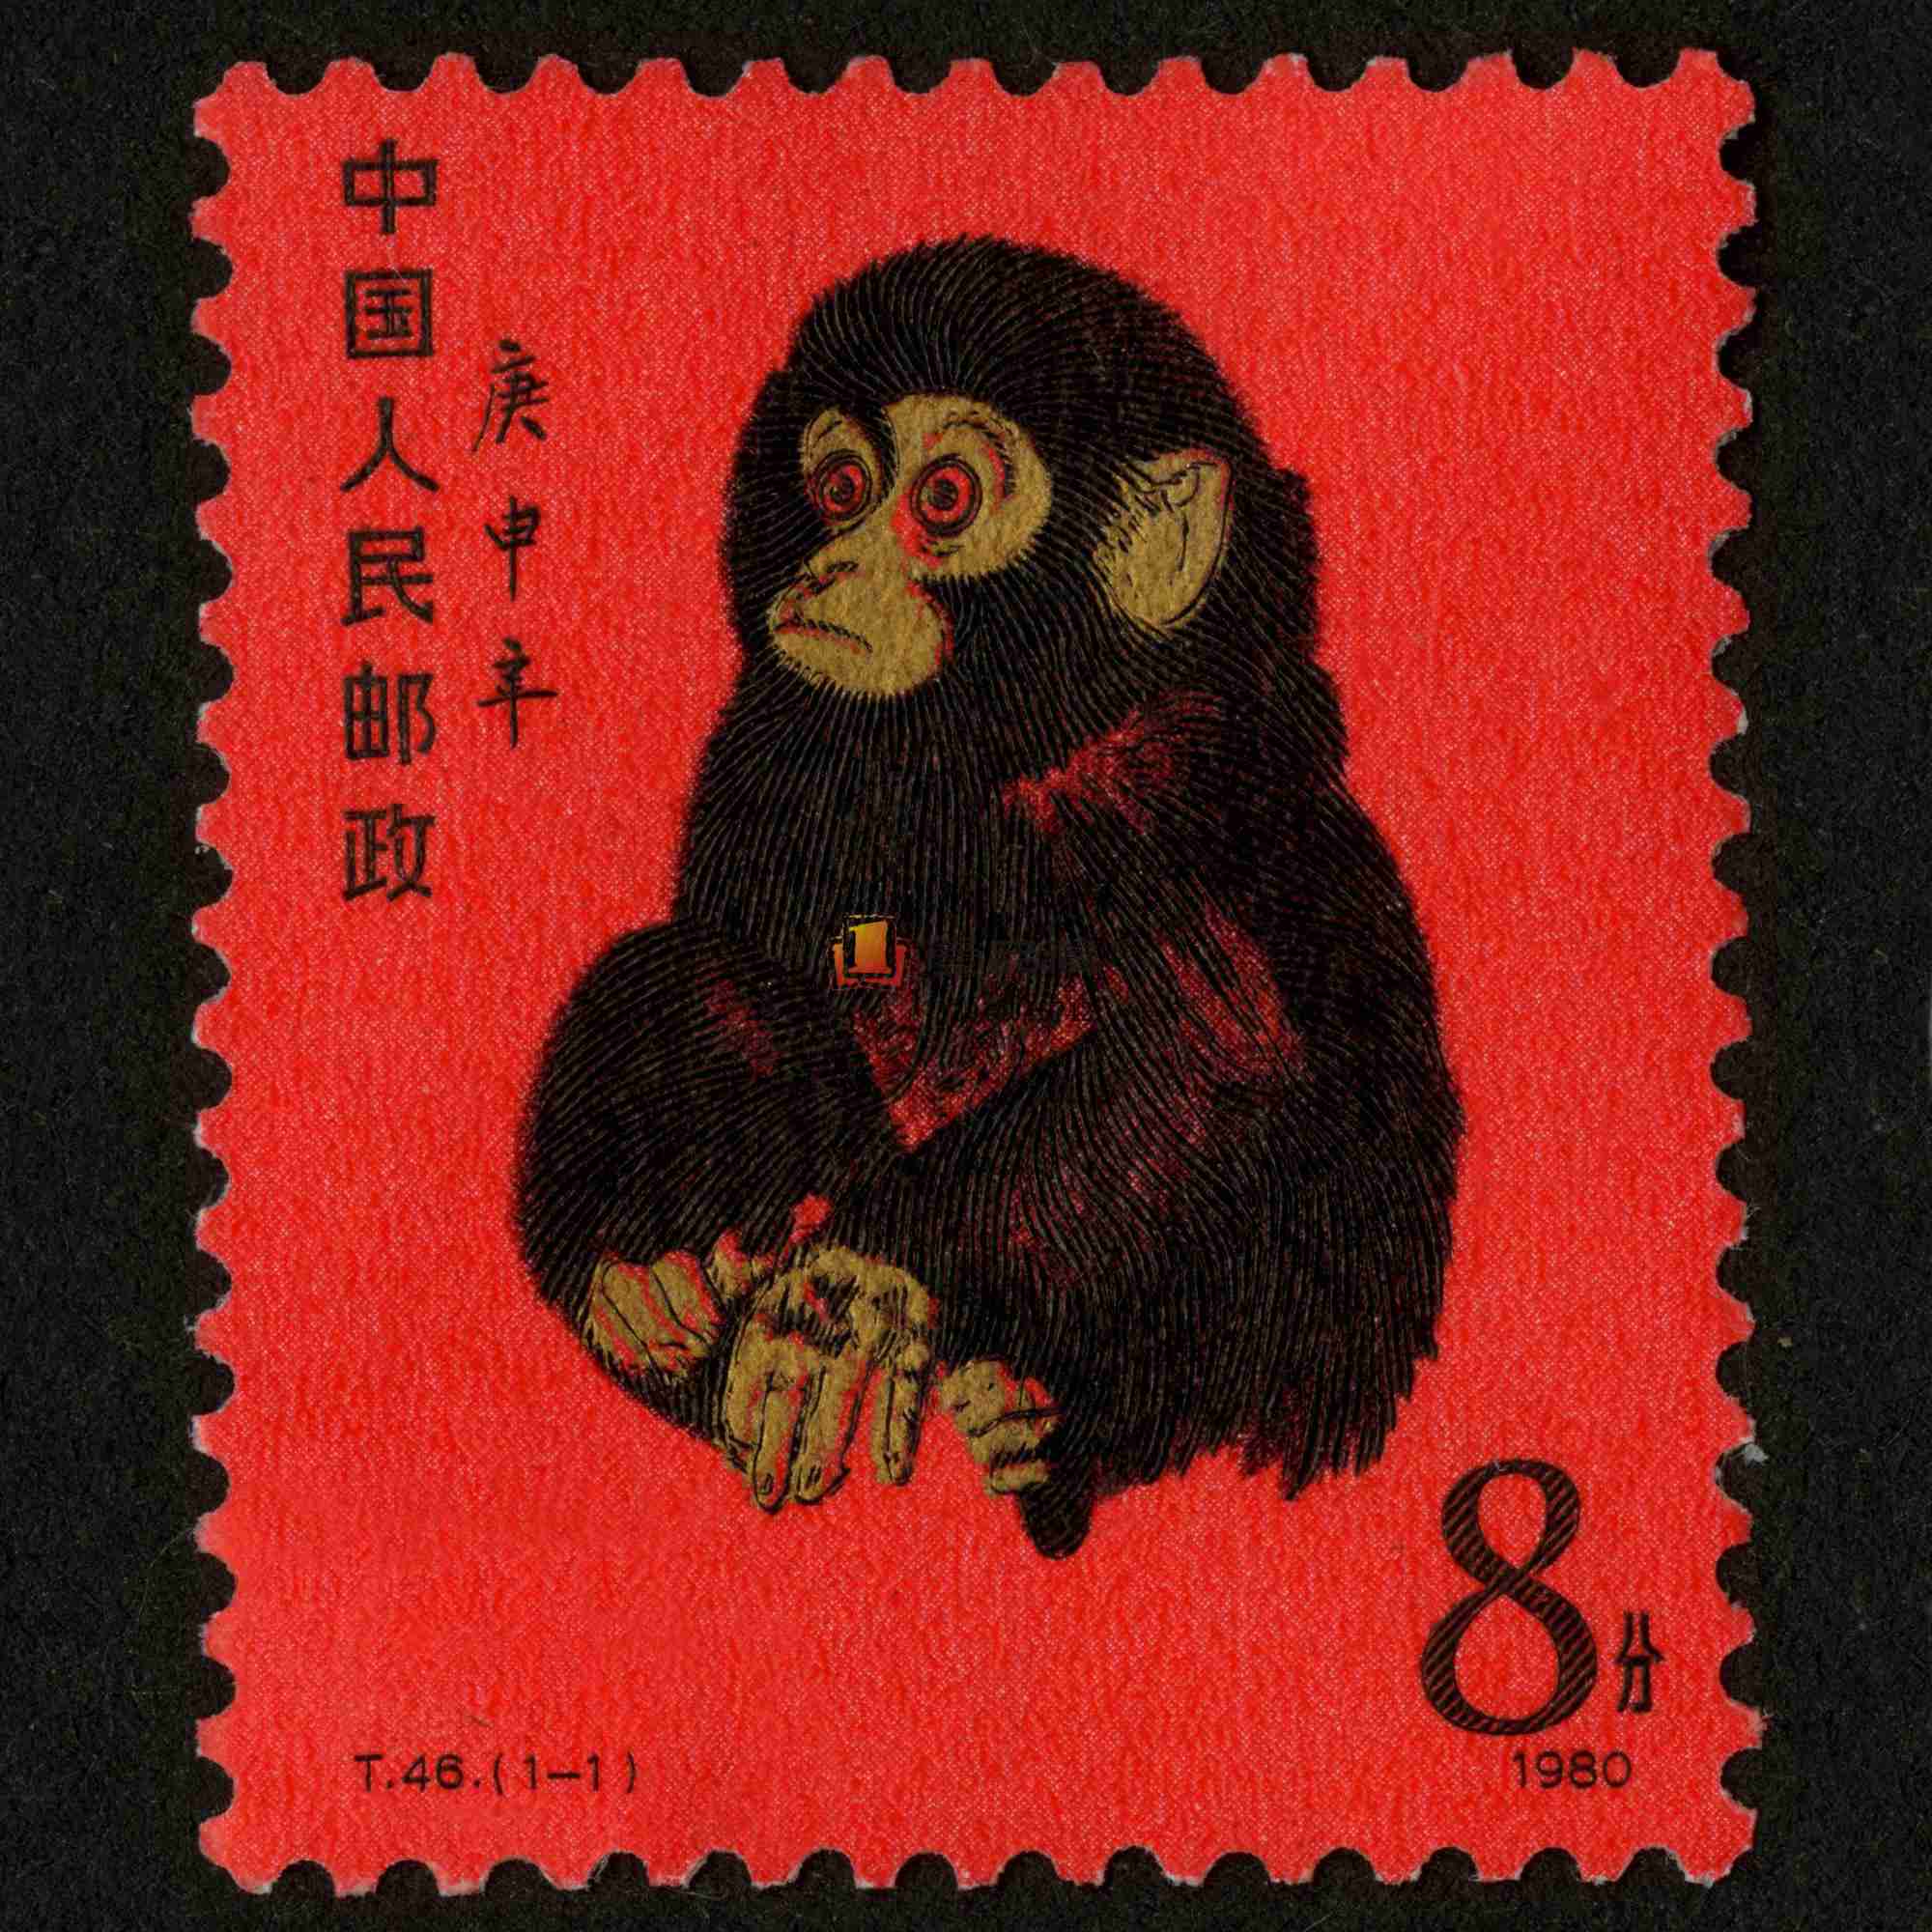 上海寄信邮票回收,民国老信封收购上海文革名人信札回收